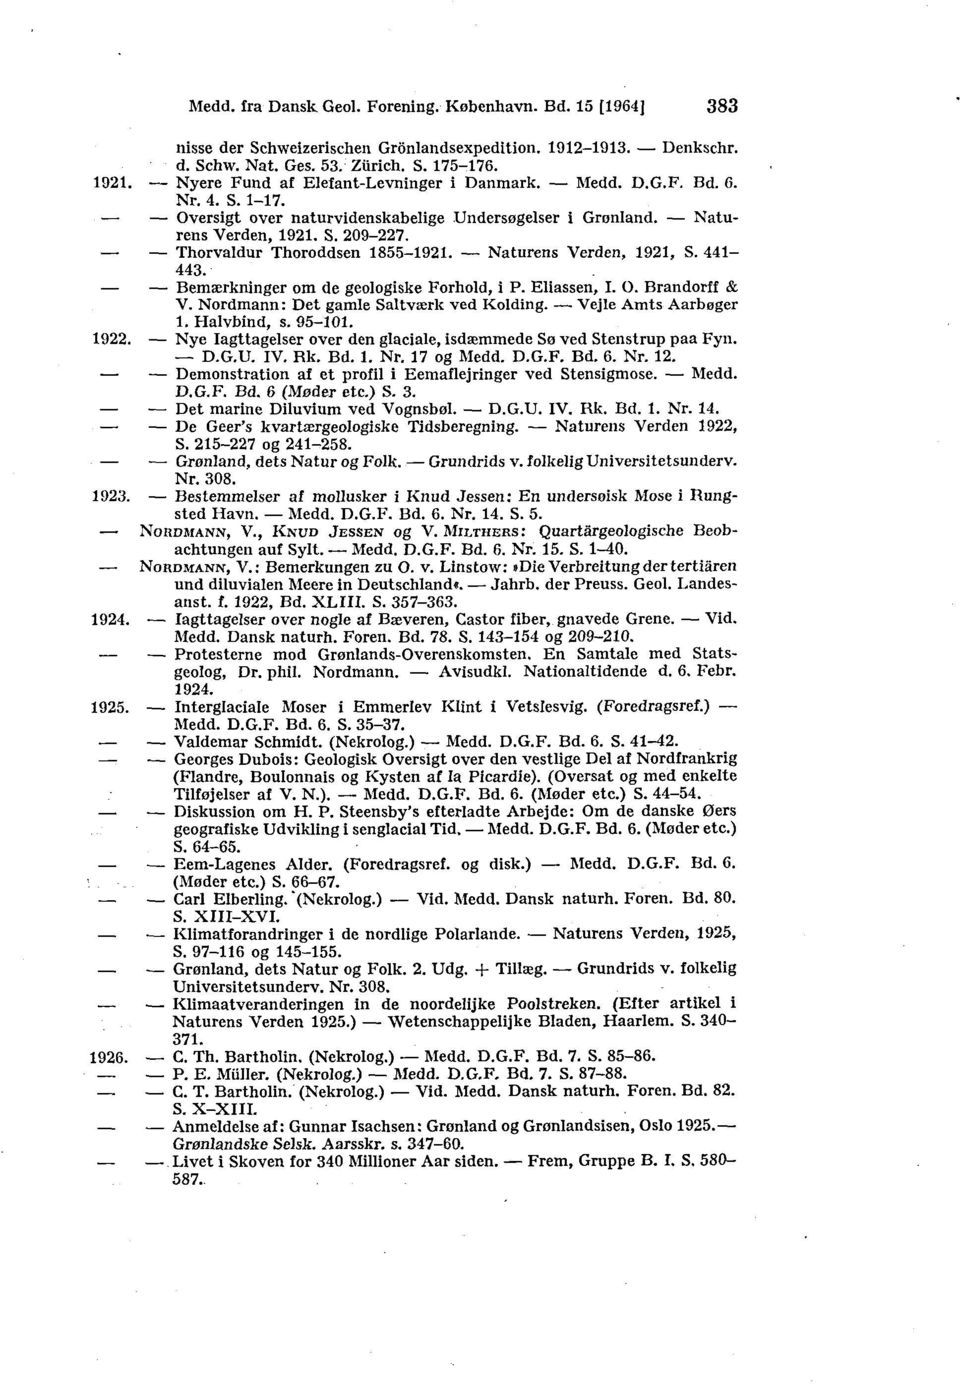 Thorvaldur Thoroddsen 1855-1921. Naturens Verden, 1921, S. 441-443. Bemærkninger om de geologiske Forhold, i P. Ellassen, I. O. Brandorff & V. Nordmann: Det gamle Saltværk ved Kolding.